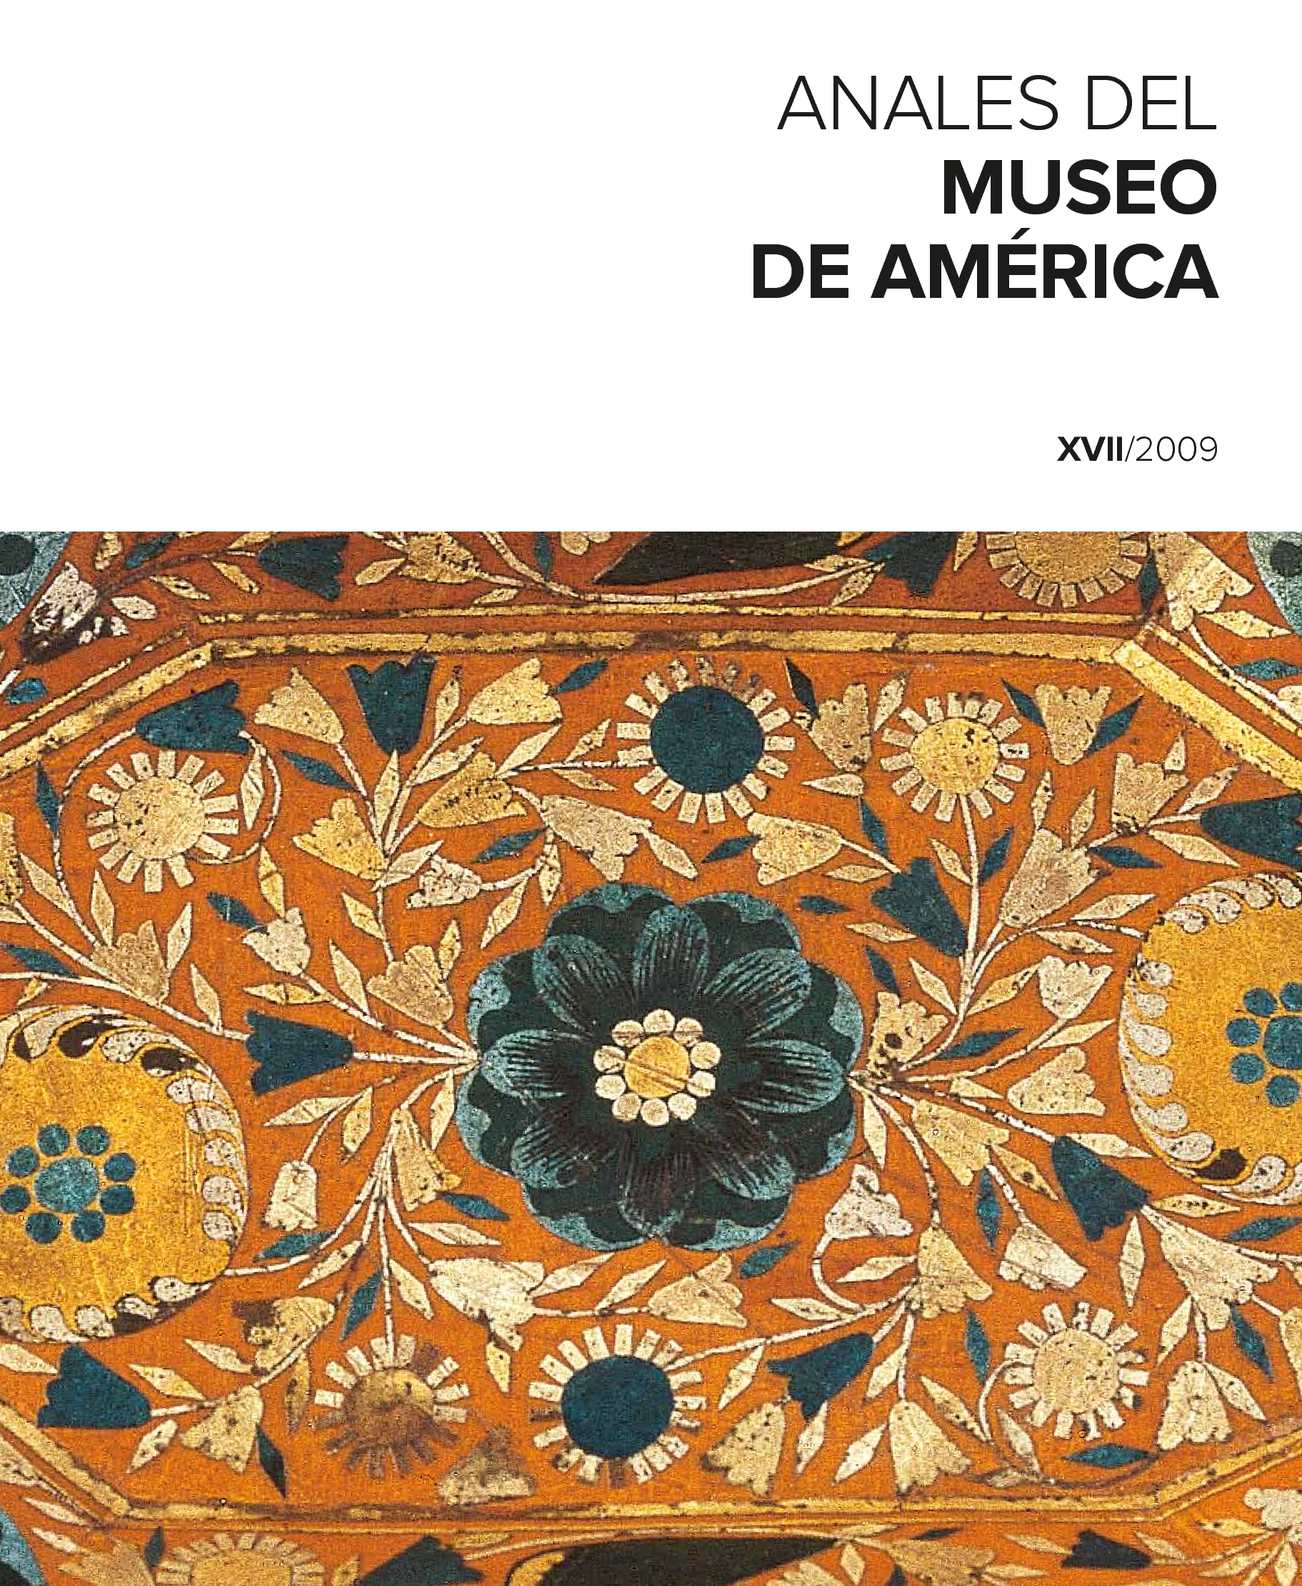 Calaméo - Anales del Museo de América. XVII/2009